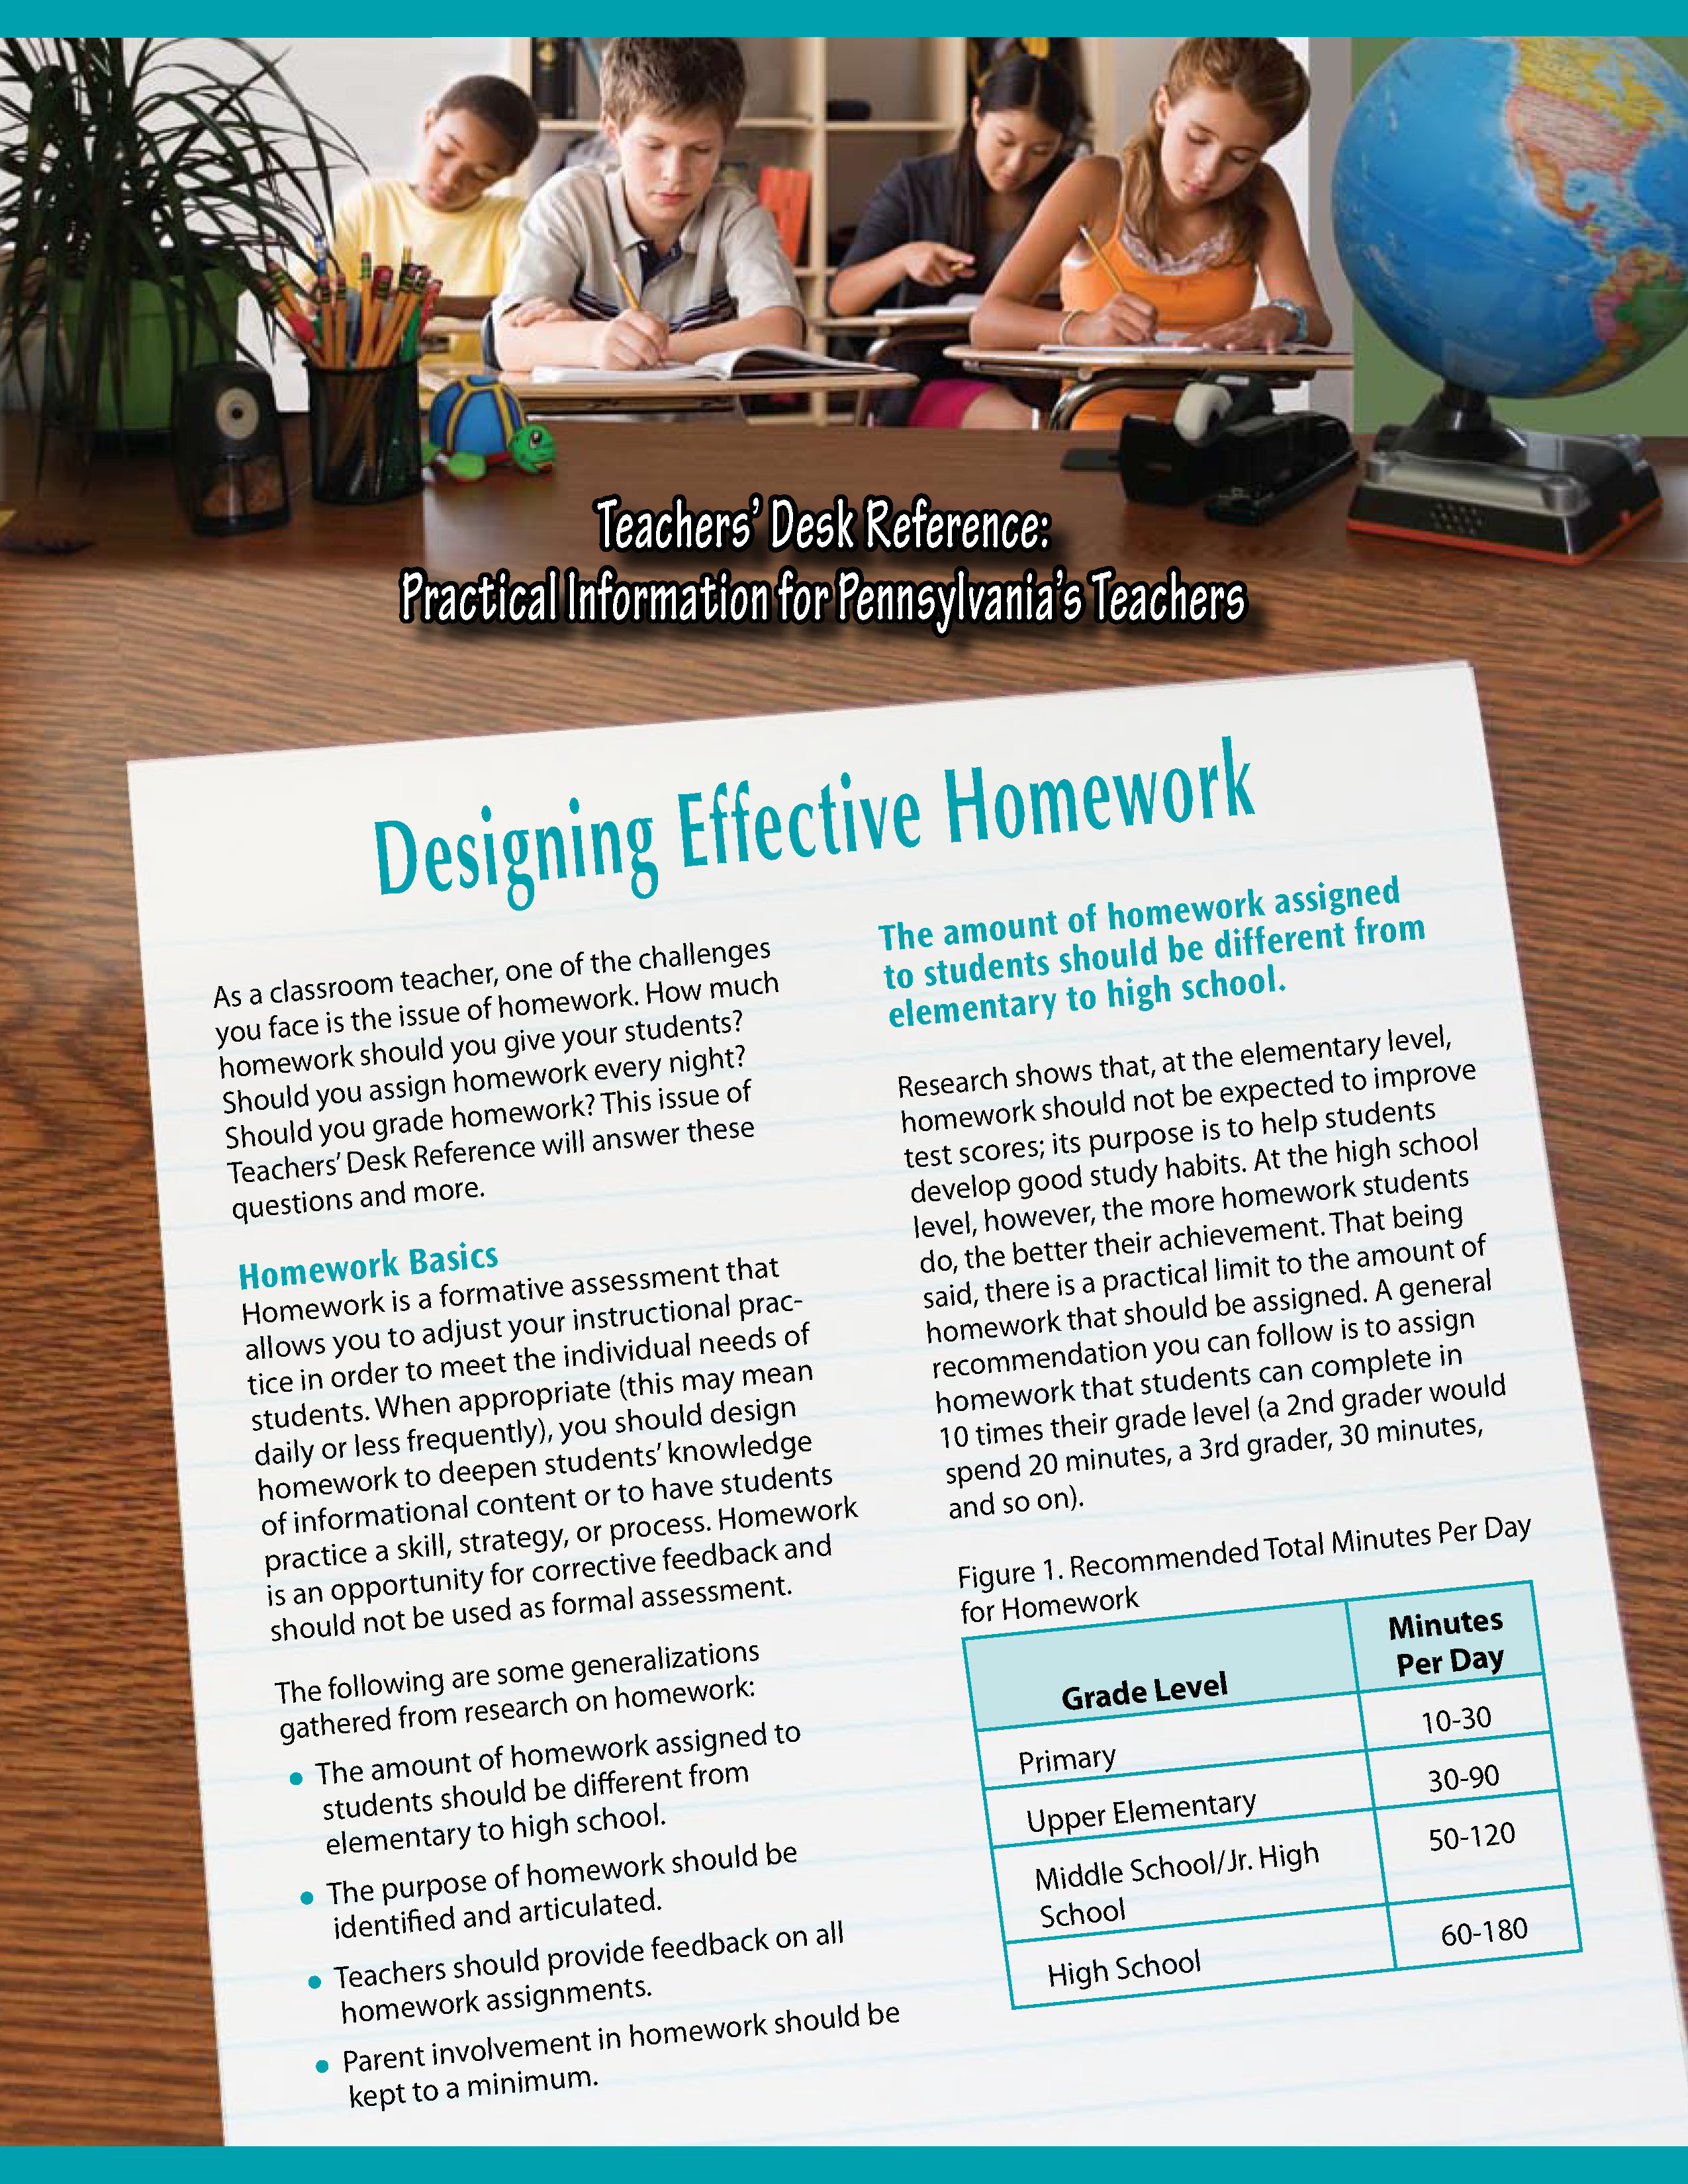 Teachers' Desk Reference: Designing Effective Homework